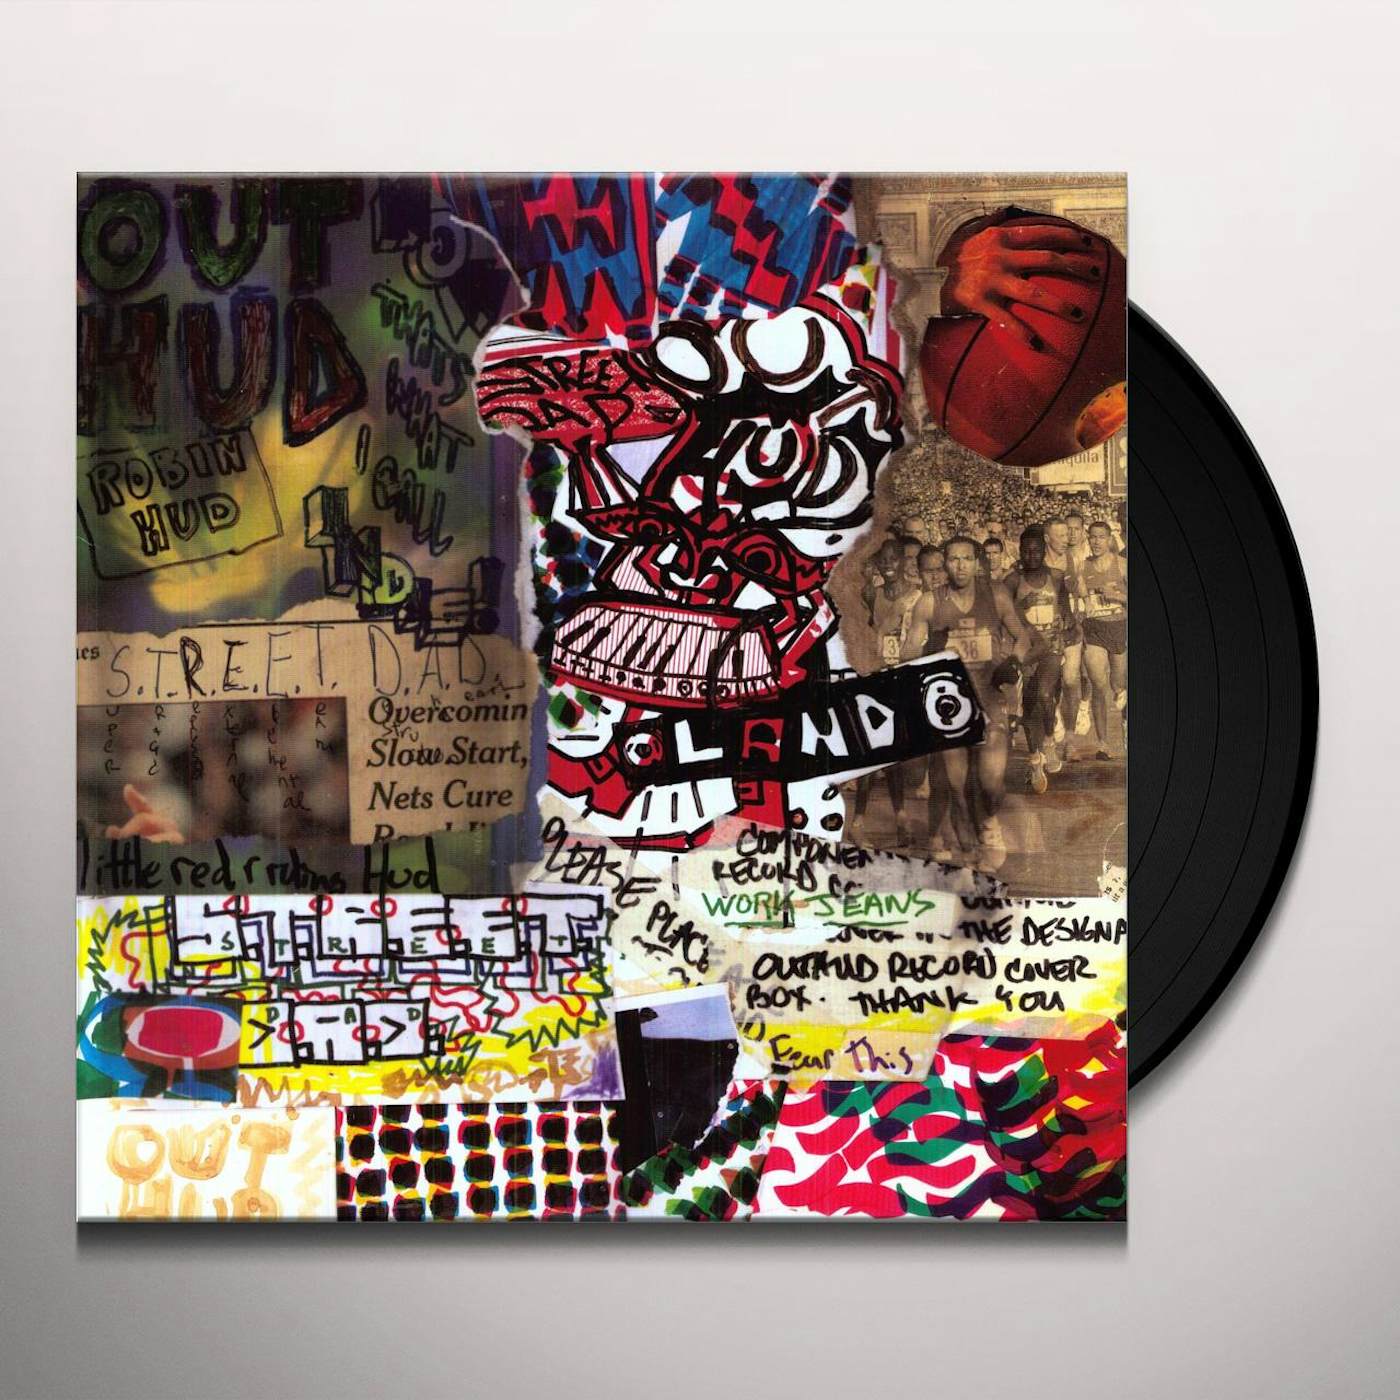 Out Hud S.T.R.E.E.T. D.A.D. Vinyl Record